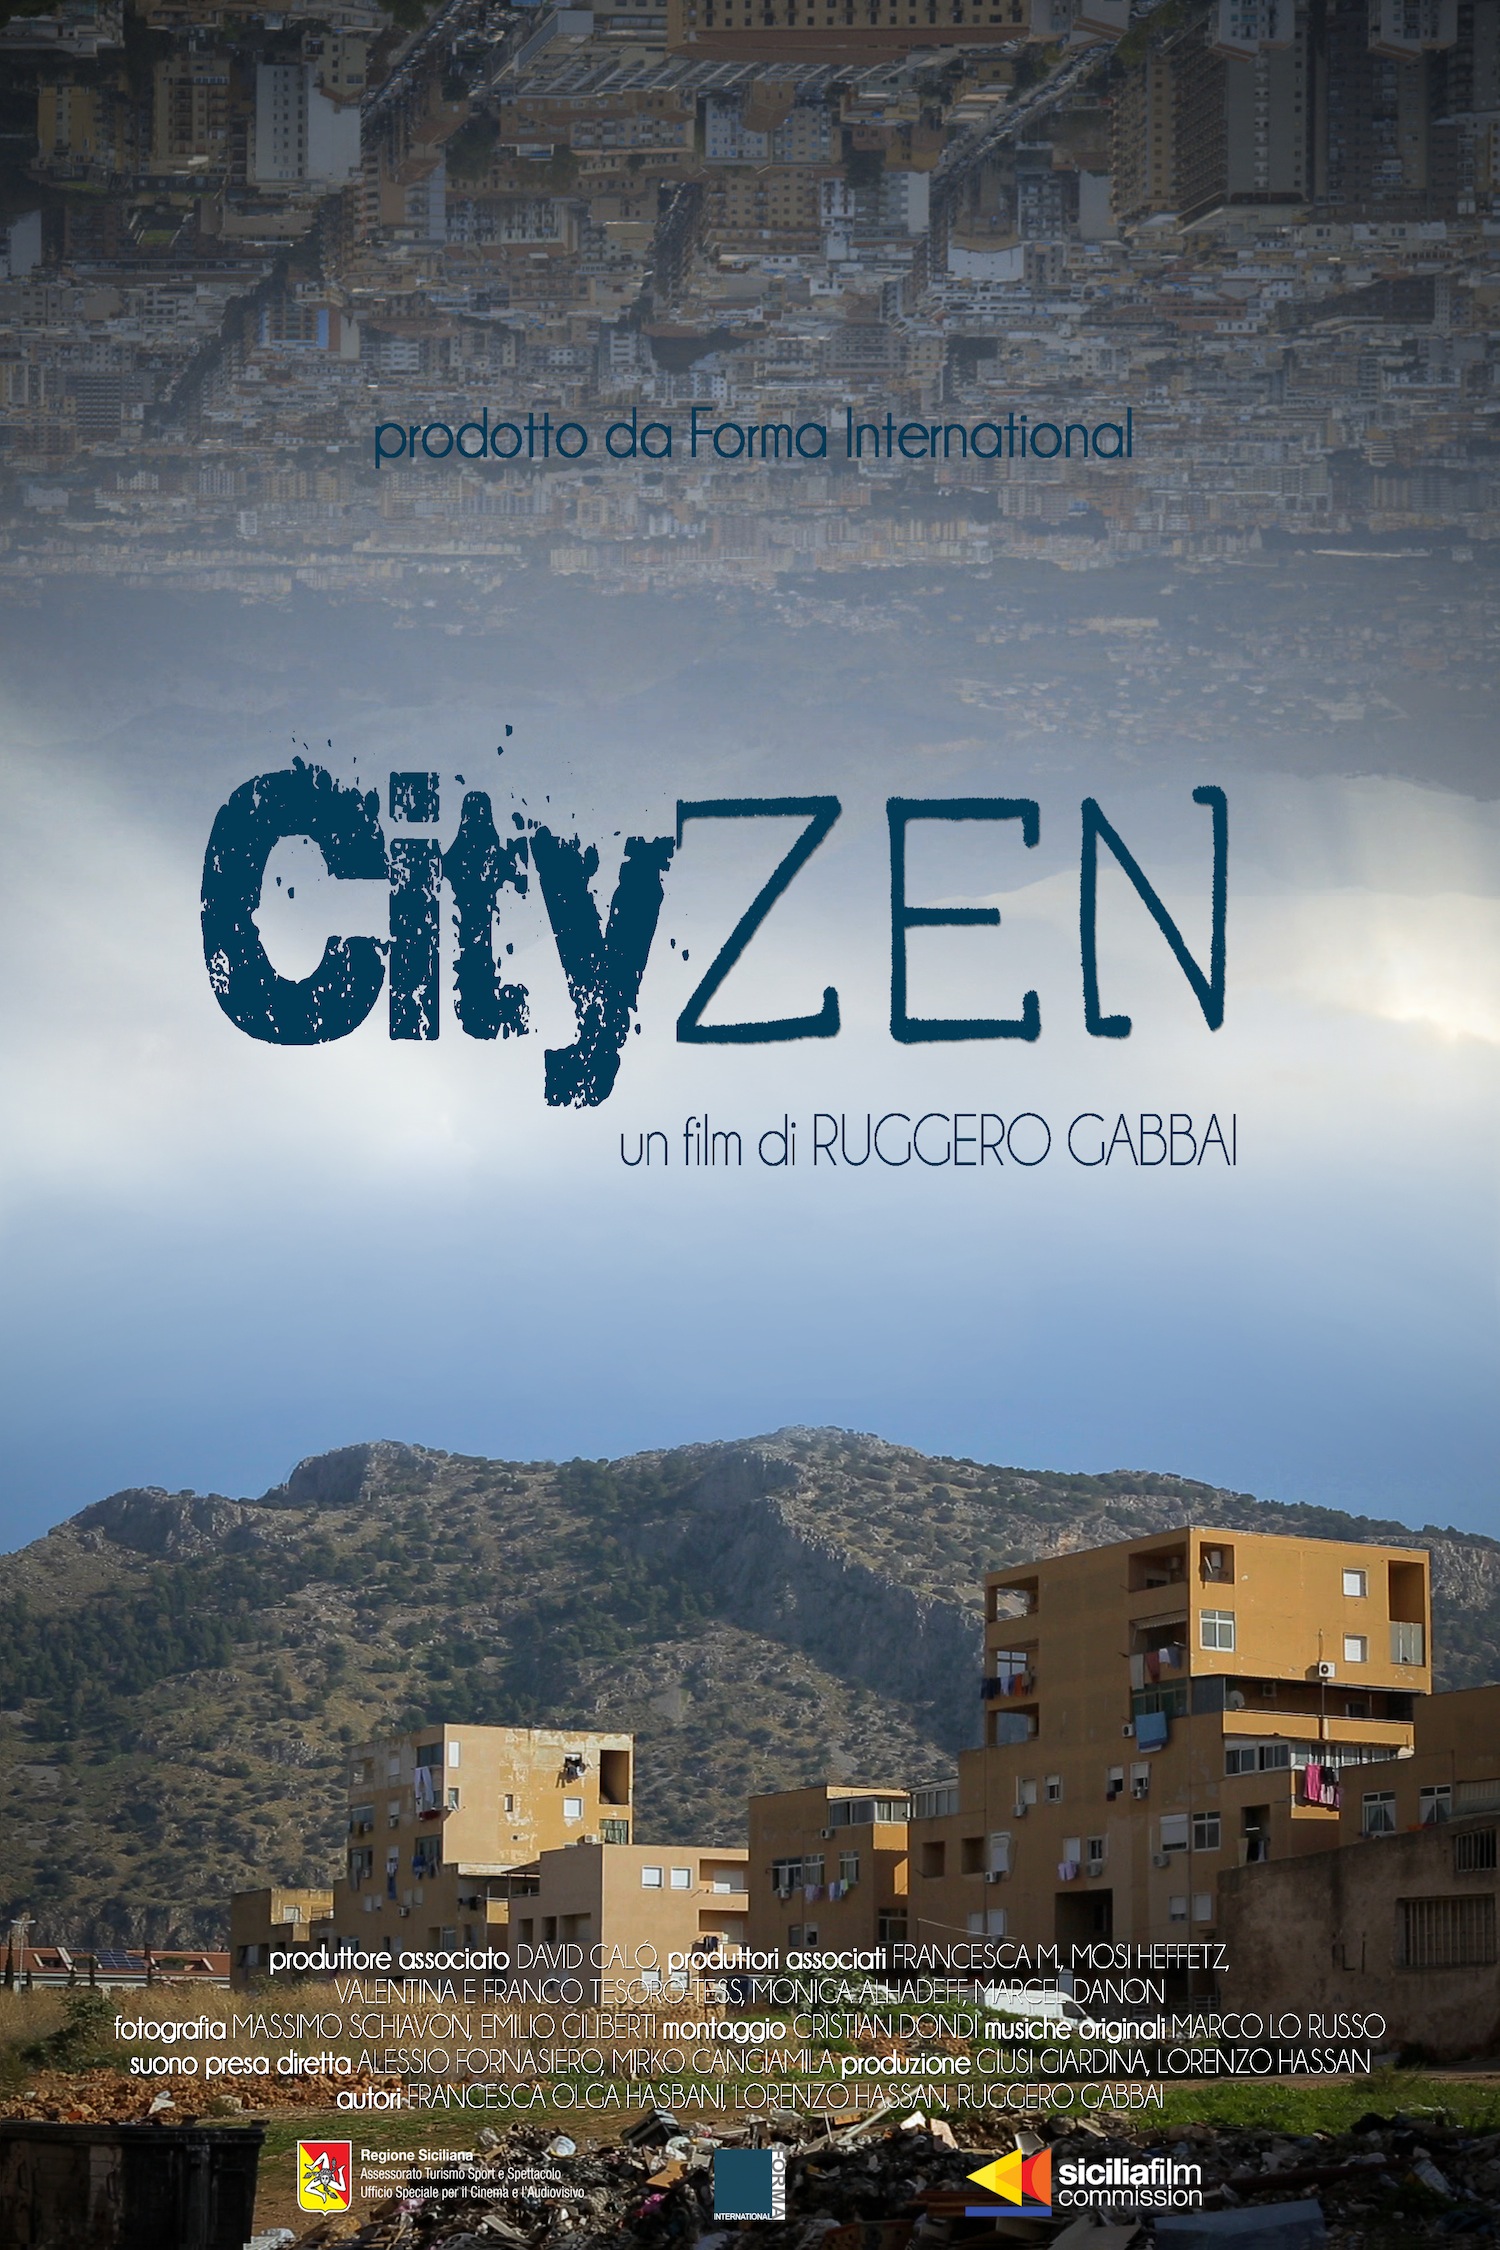 Cityzen by Ruggero Gabbai music by Marco Lo Russo